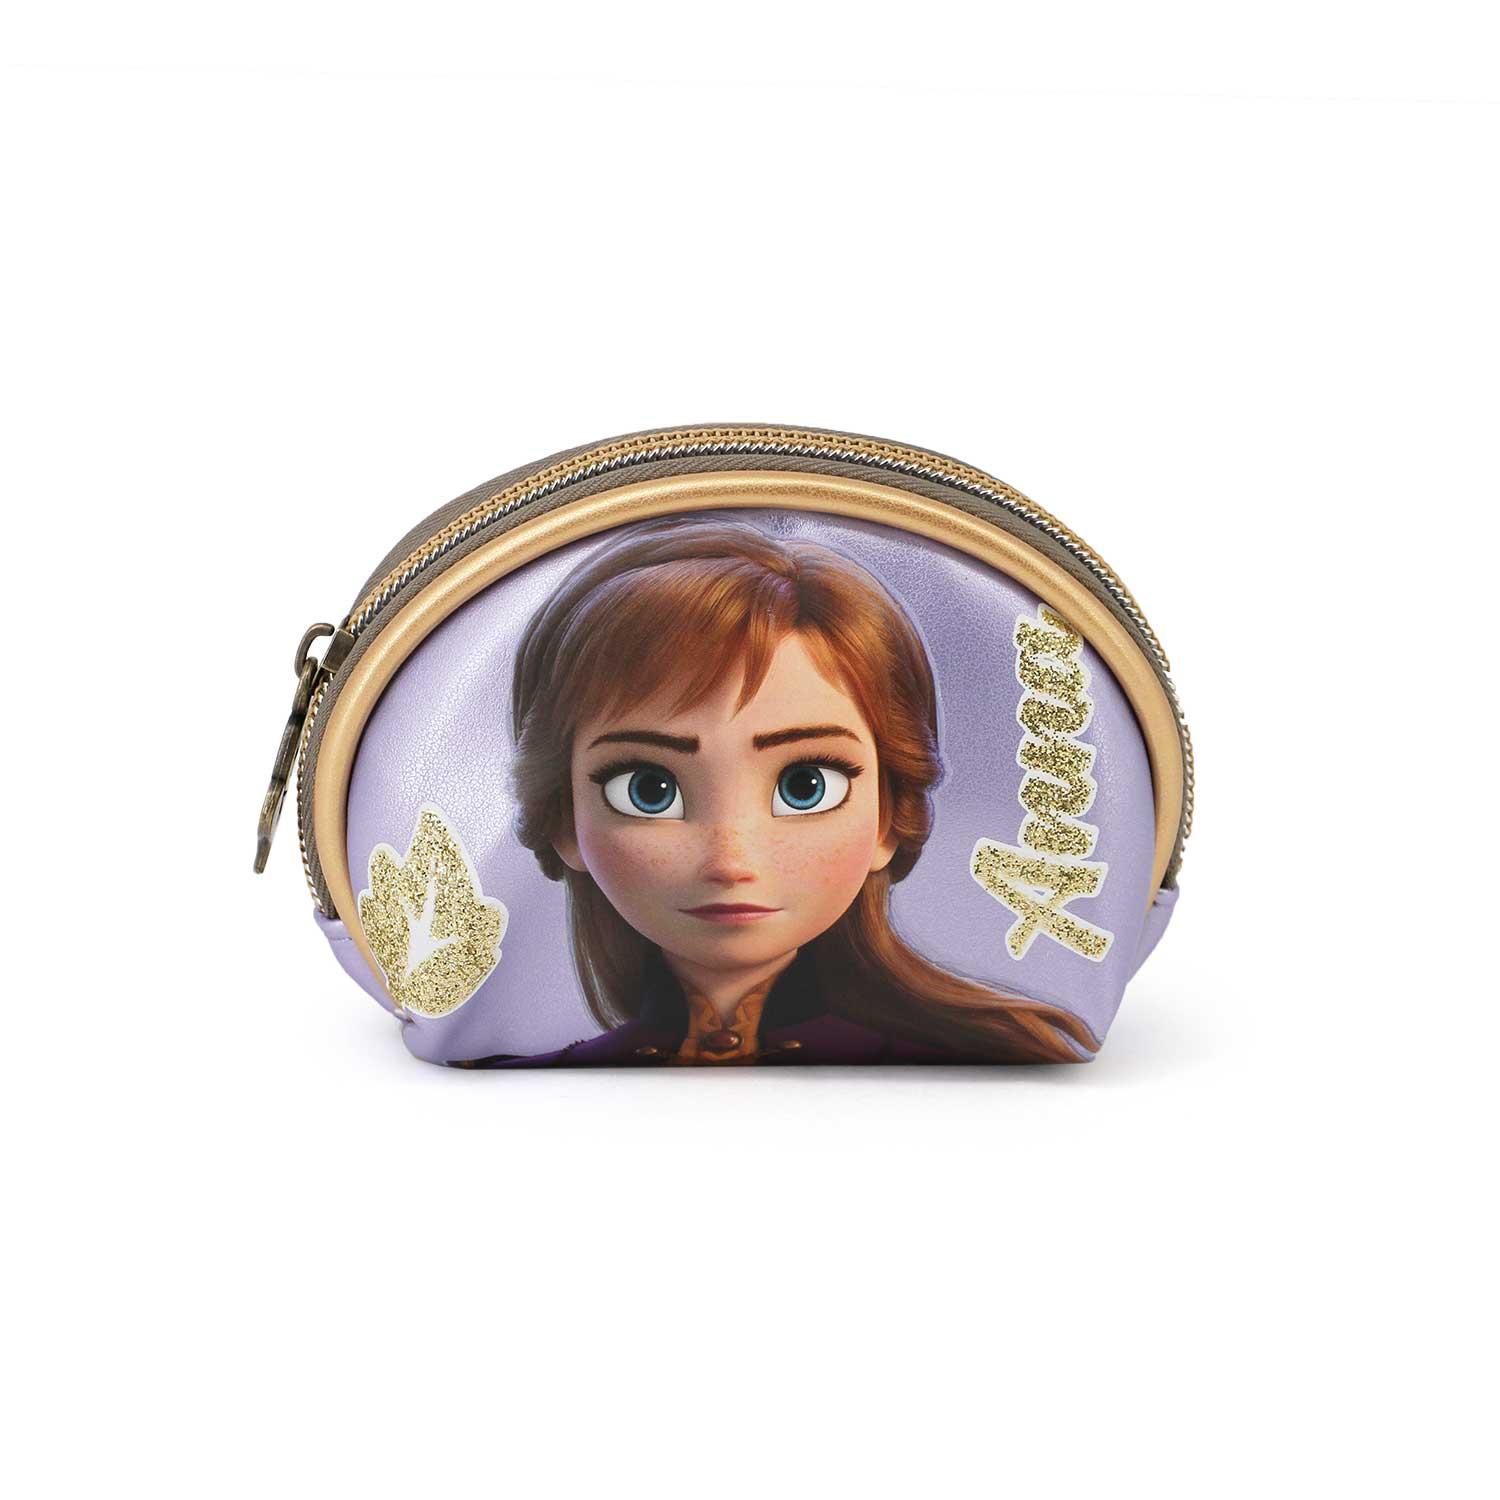 Monedero de Frozen 2 de Anna